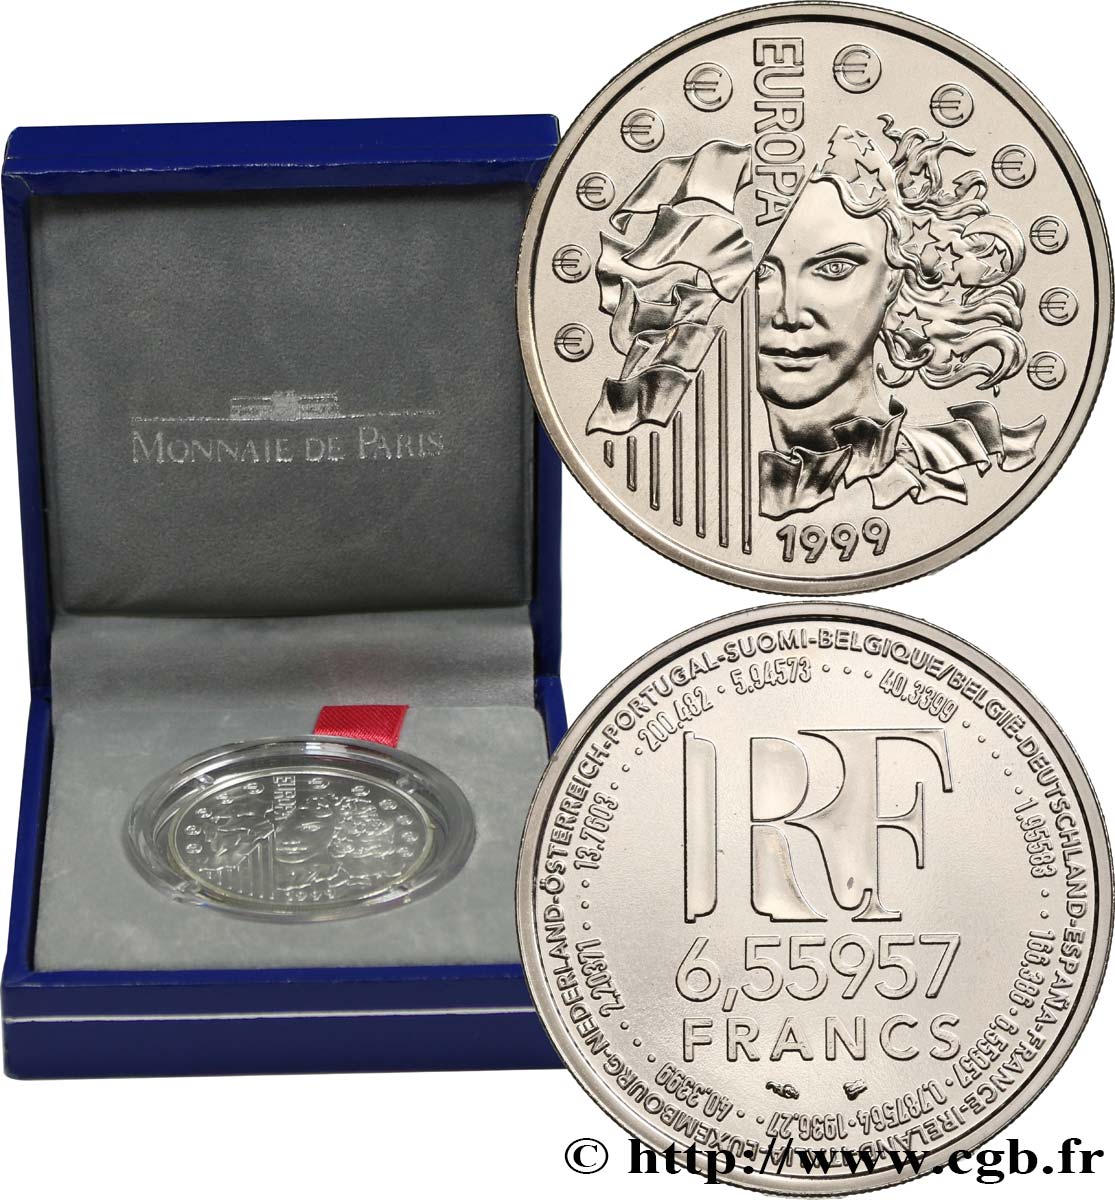 Brillant Universel 6,55957 francs - La parité 1999 Paris F.1250 2 MS 